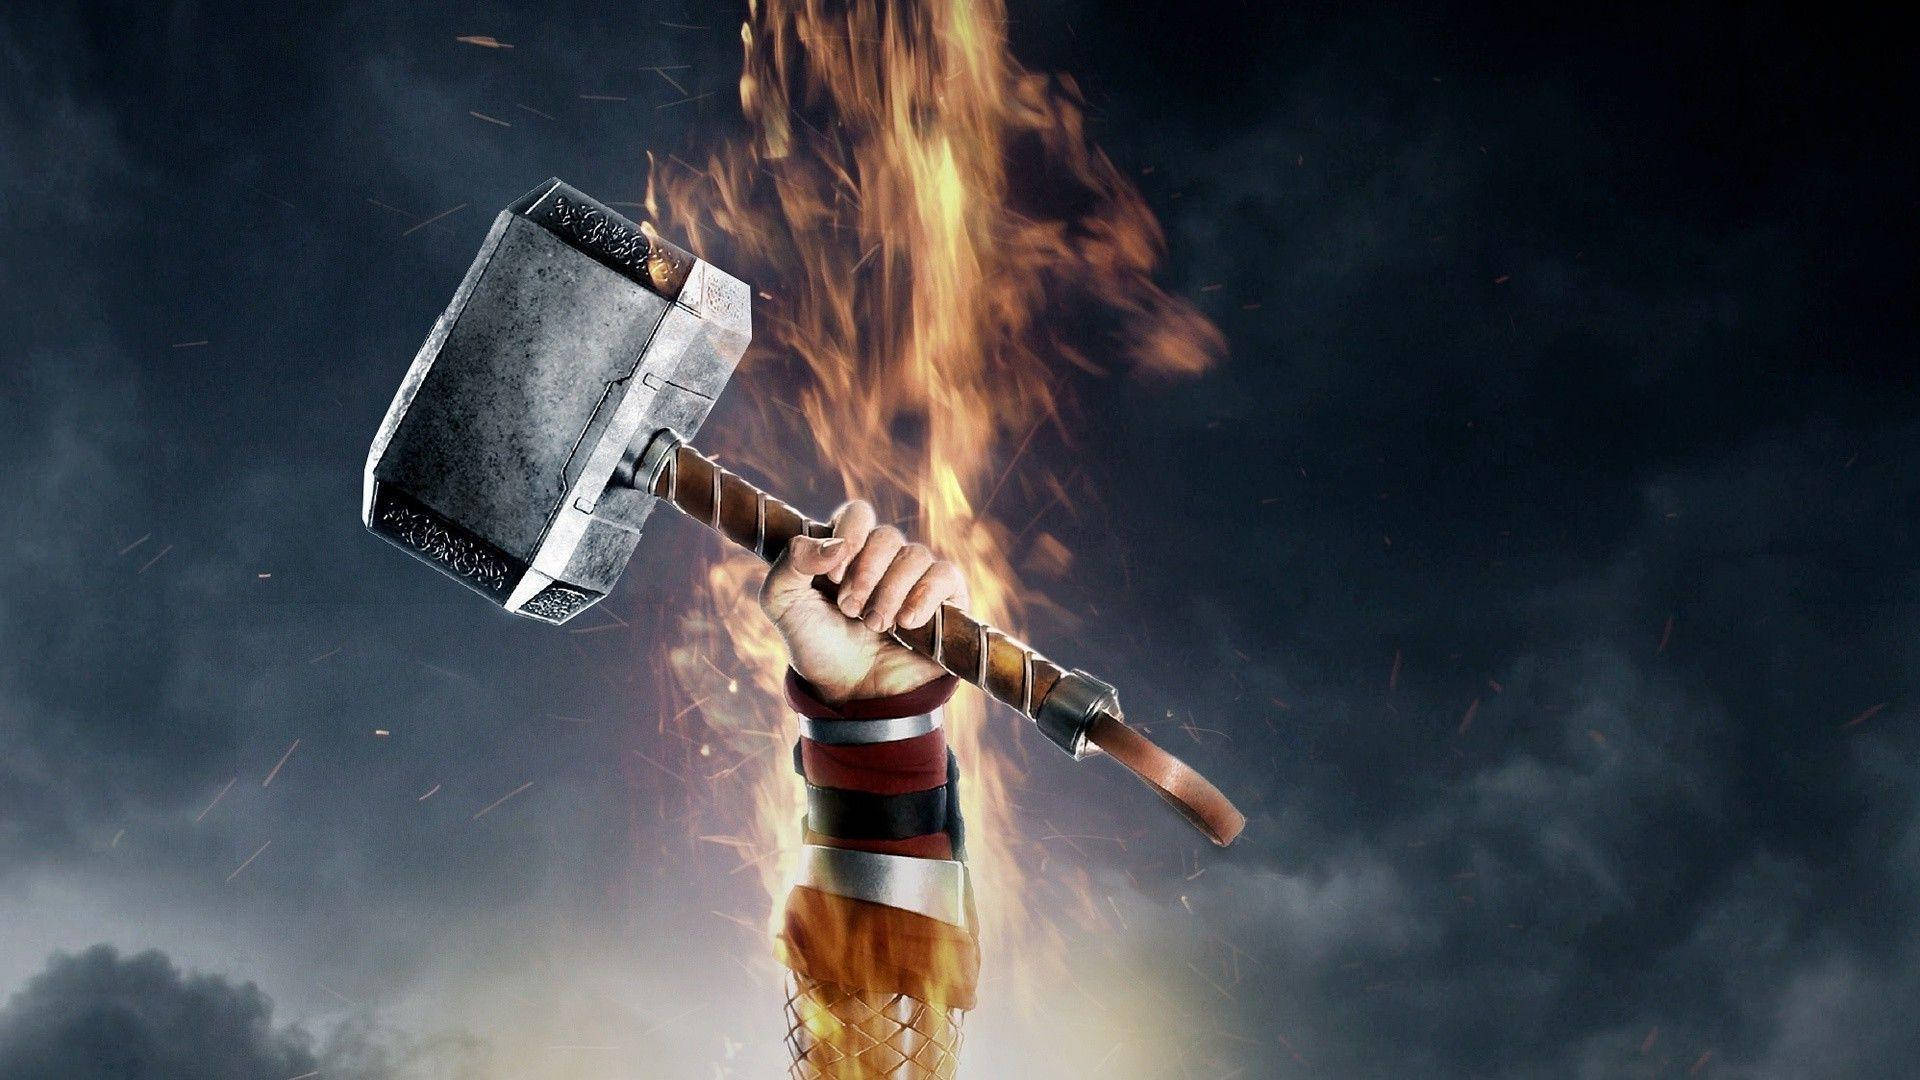 Feel the power of Thor's hammer Wallpaper